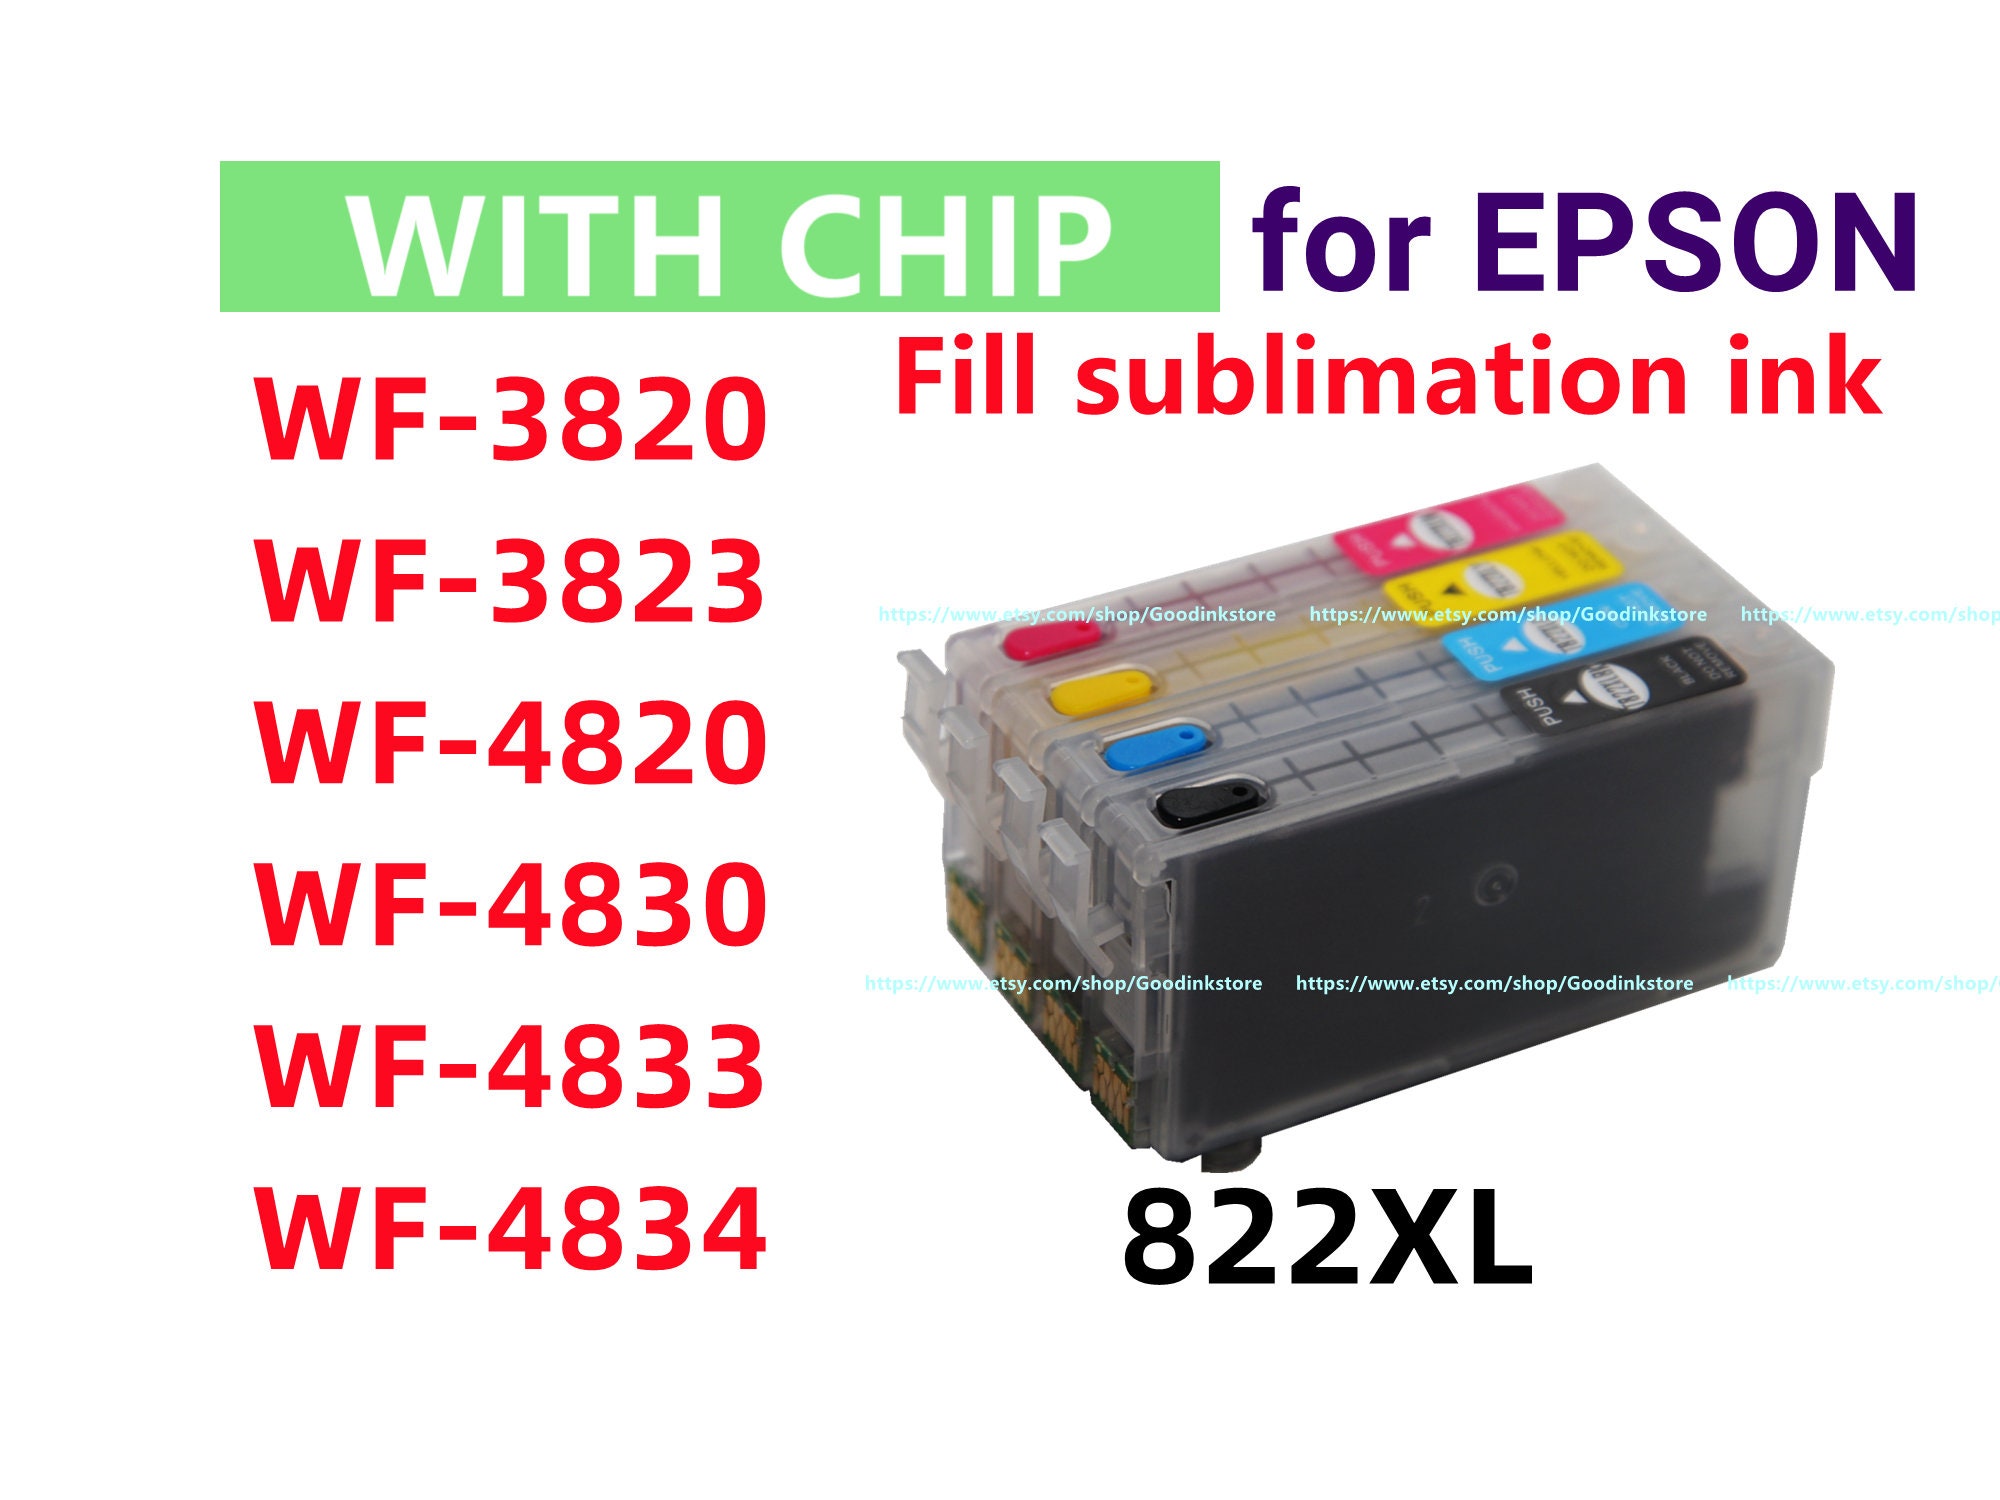 Impresora sublimación Epson WF-7310 de cartuchos recargables